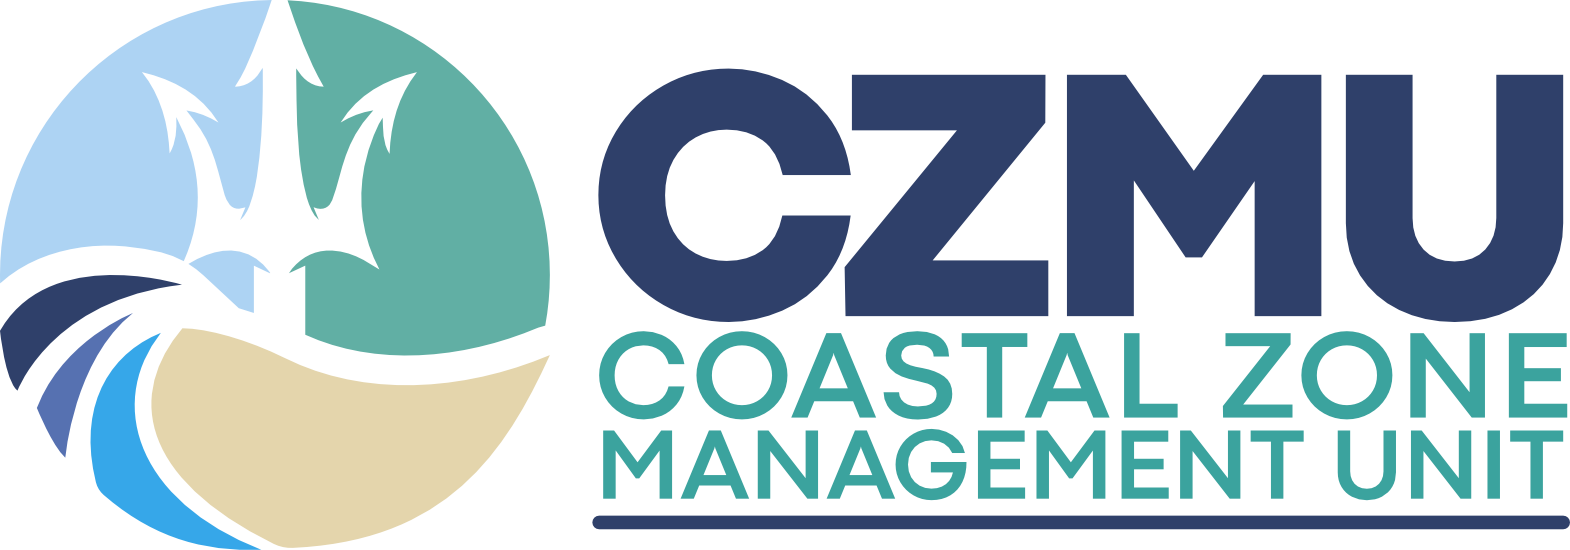 Coastal Zone Management Unit